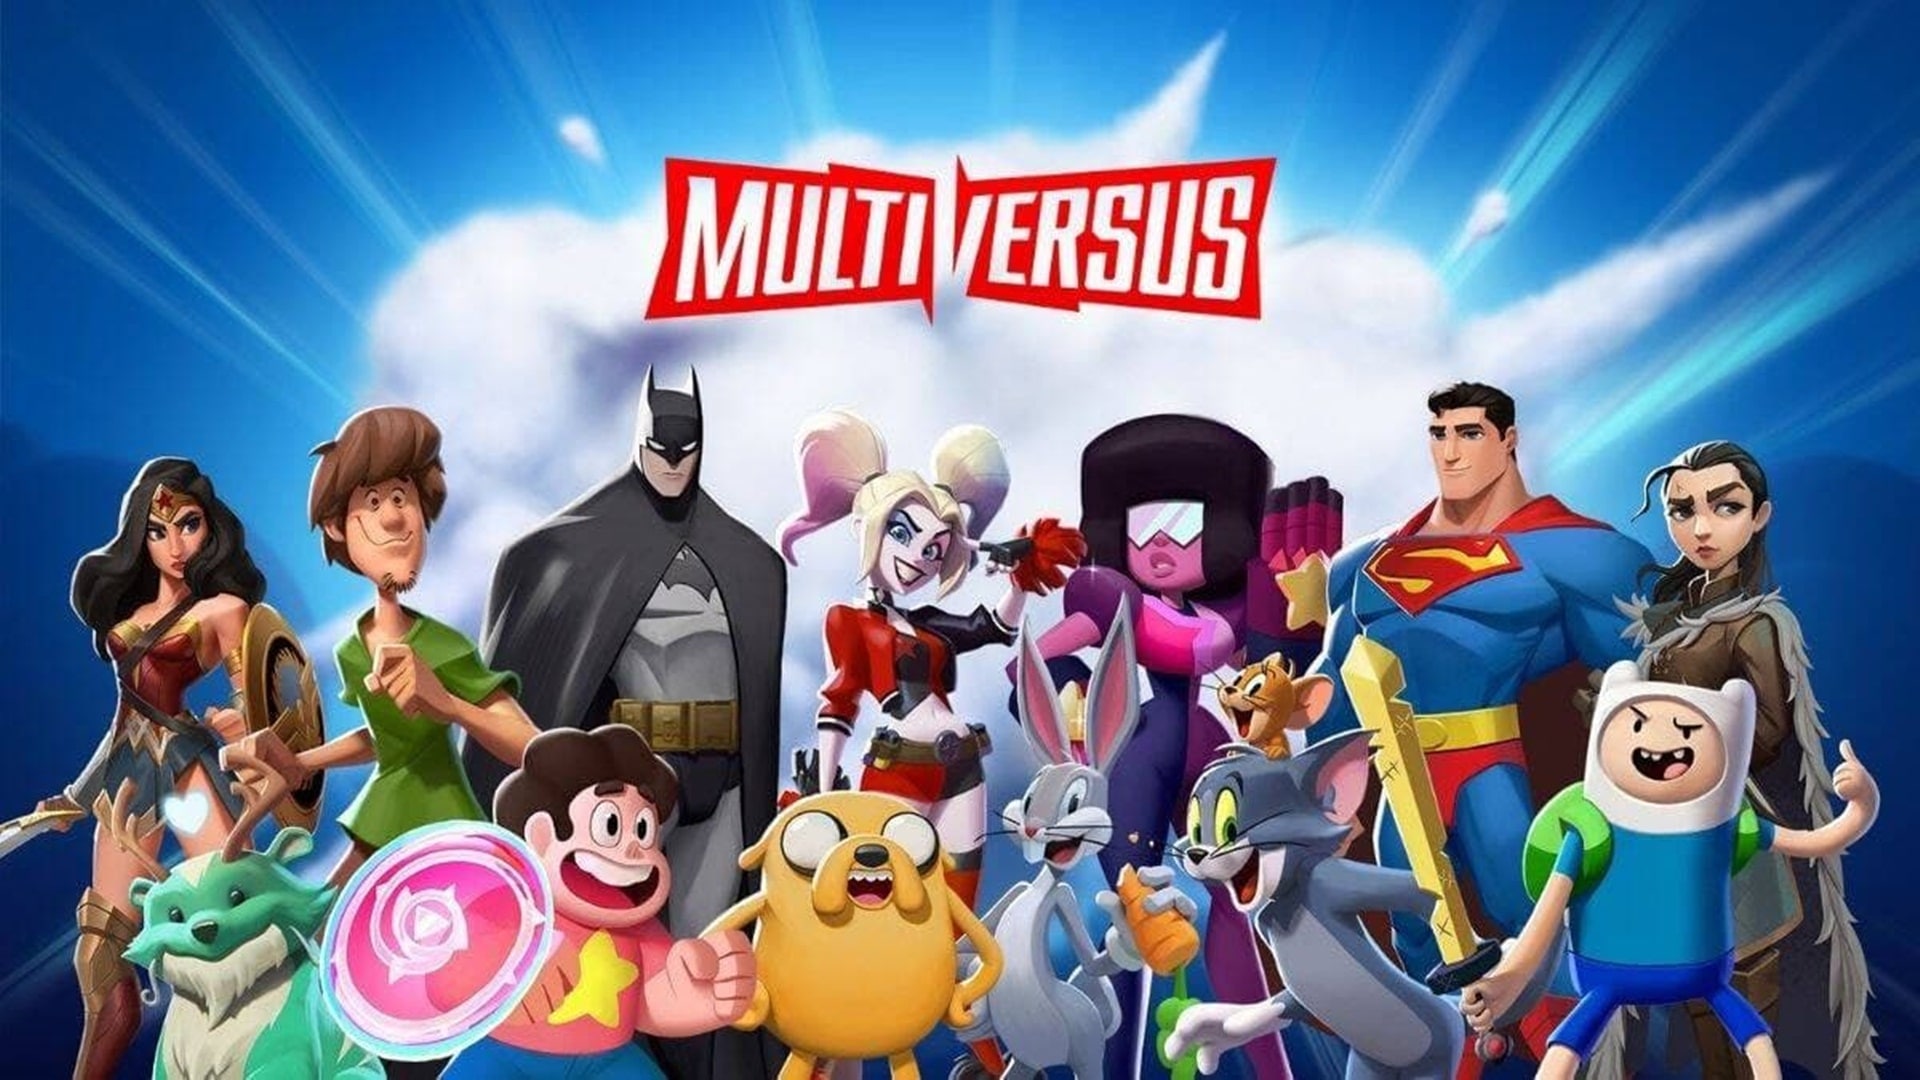 Multiversus: Se filtran nuevos personajes incluidos Pickle Rick, LeBron James, y Godzilla, GamersRD